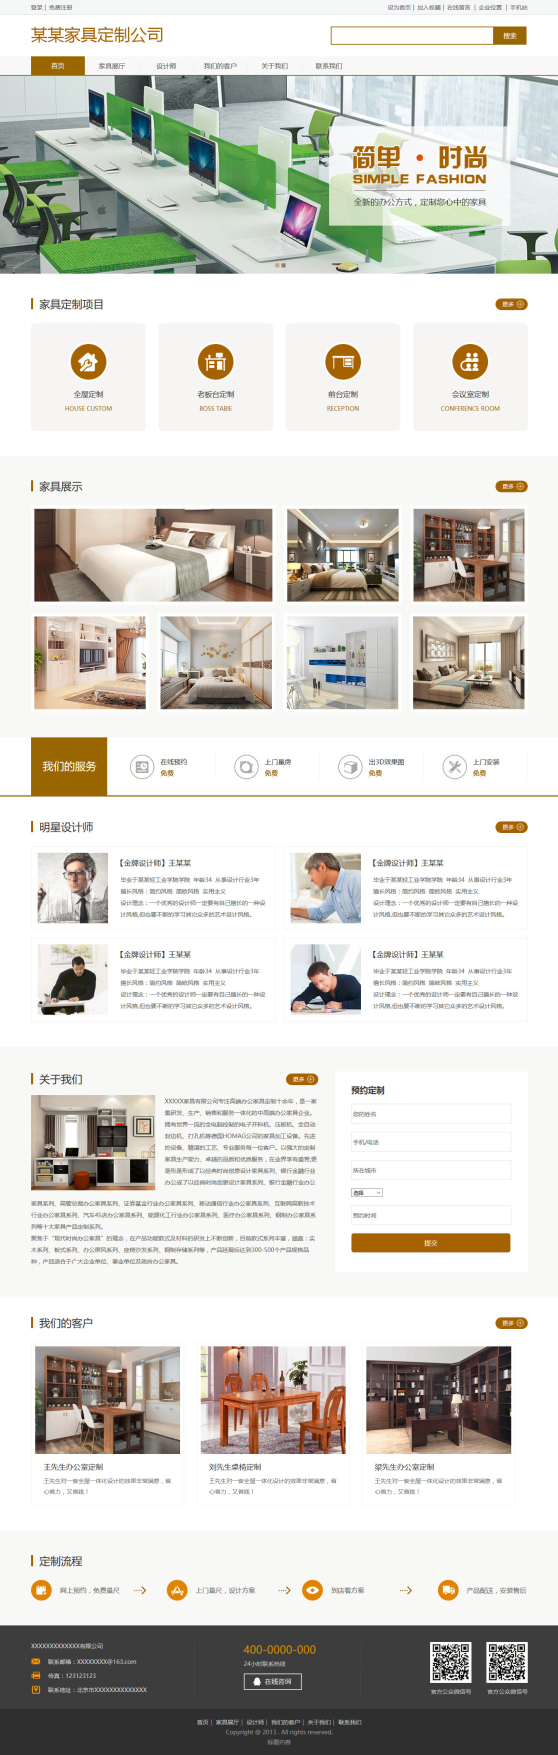 简洁定制家具公司网站模板